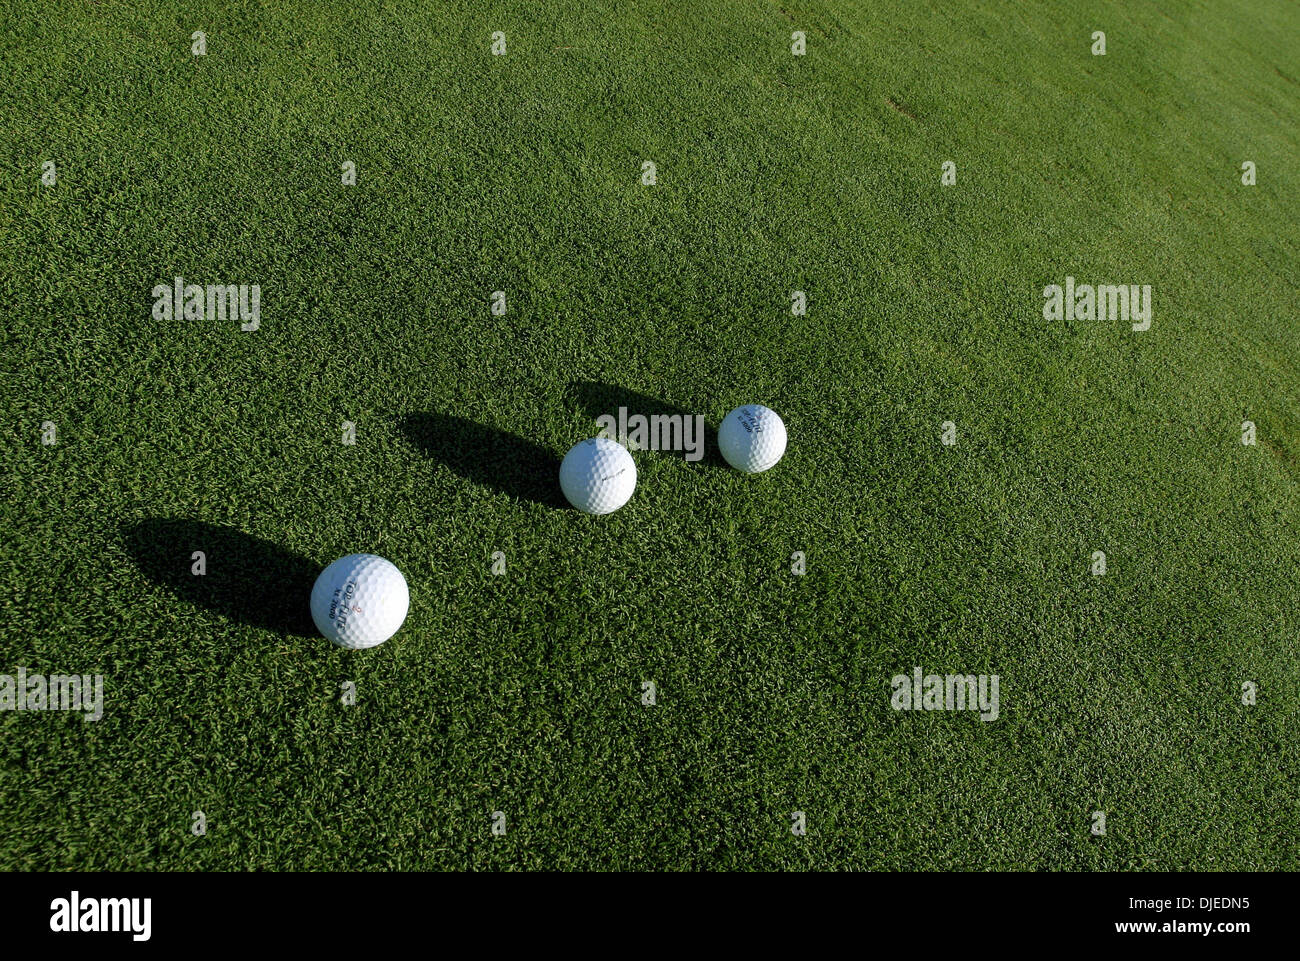 Sep 01, 2004; Los Angeles, Kalifornien, USA; Golfbälle in einem der vielen driving Ranges in Südkalifornien. Spiel Golf, Golfschläger, Putter, Golfball, Flagge, Fahrer. Stockfoto